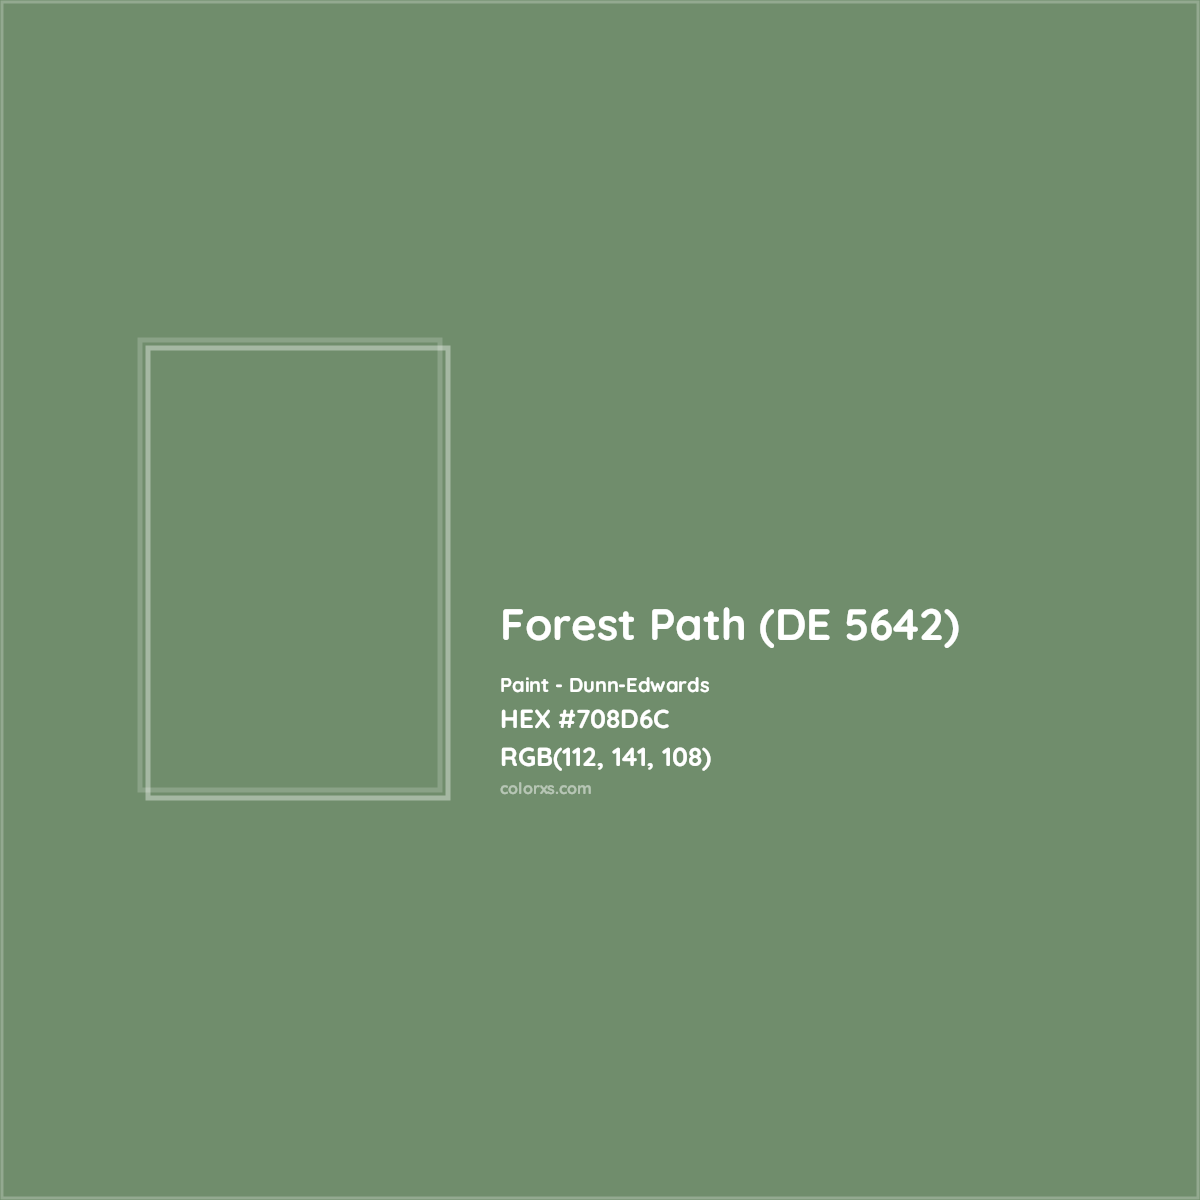 HEX #708D6C Forest Path (DE 5642) Paint Dunn-Edwards - Color Code